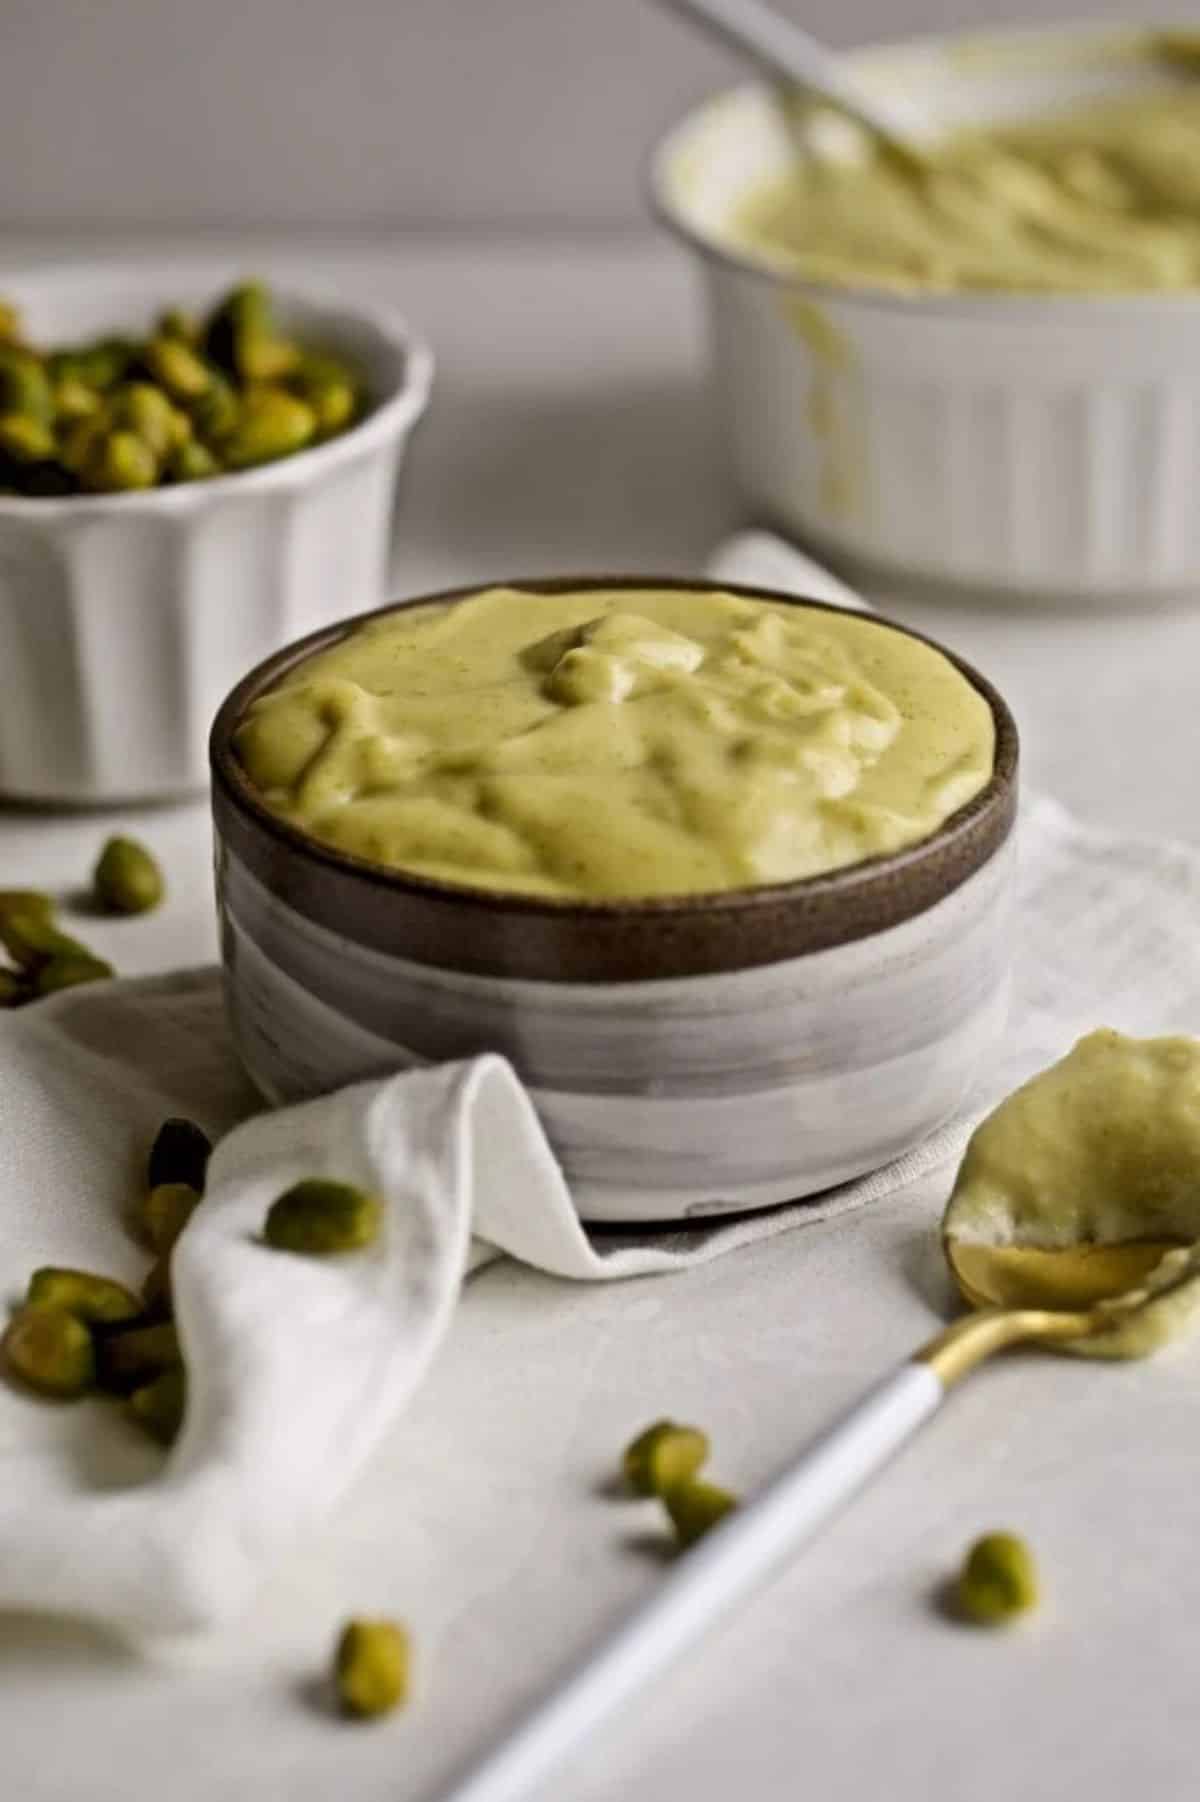 Italian Pistachio Cream in a brown bowl.